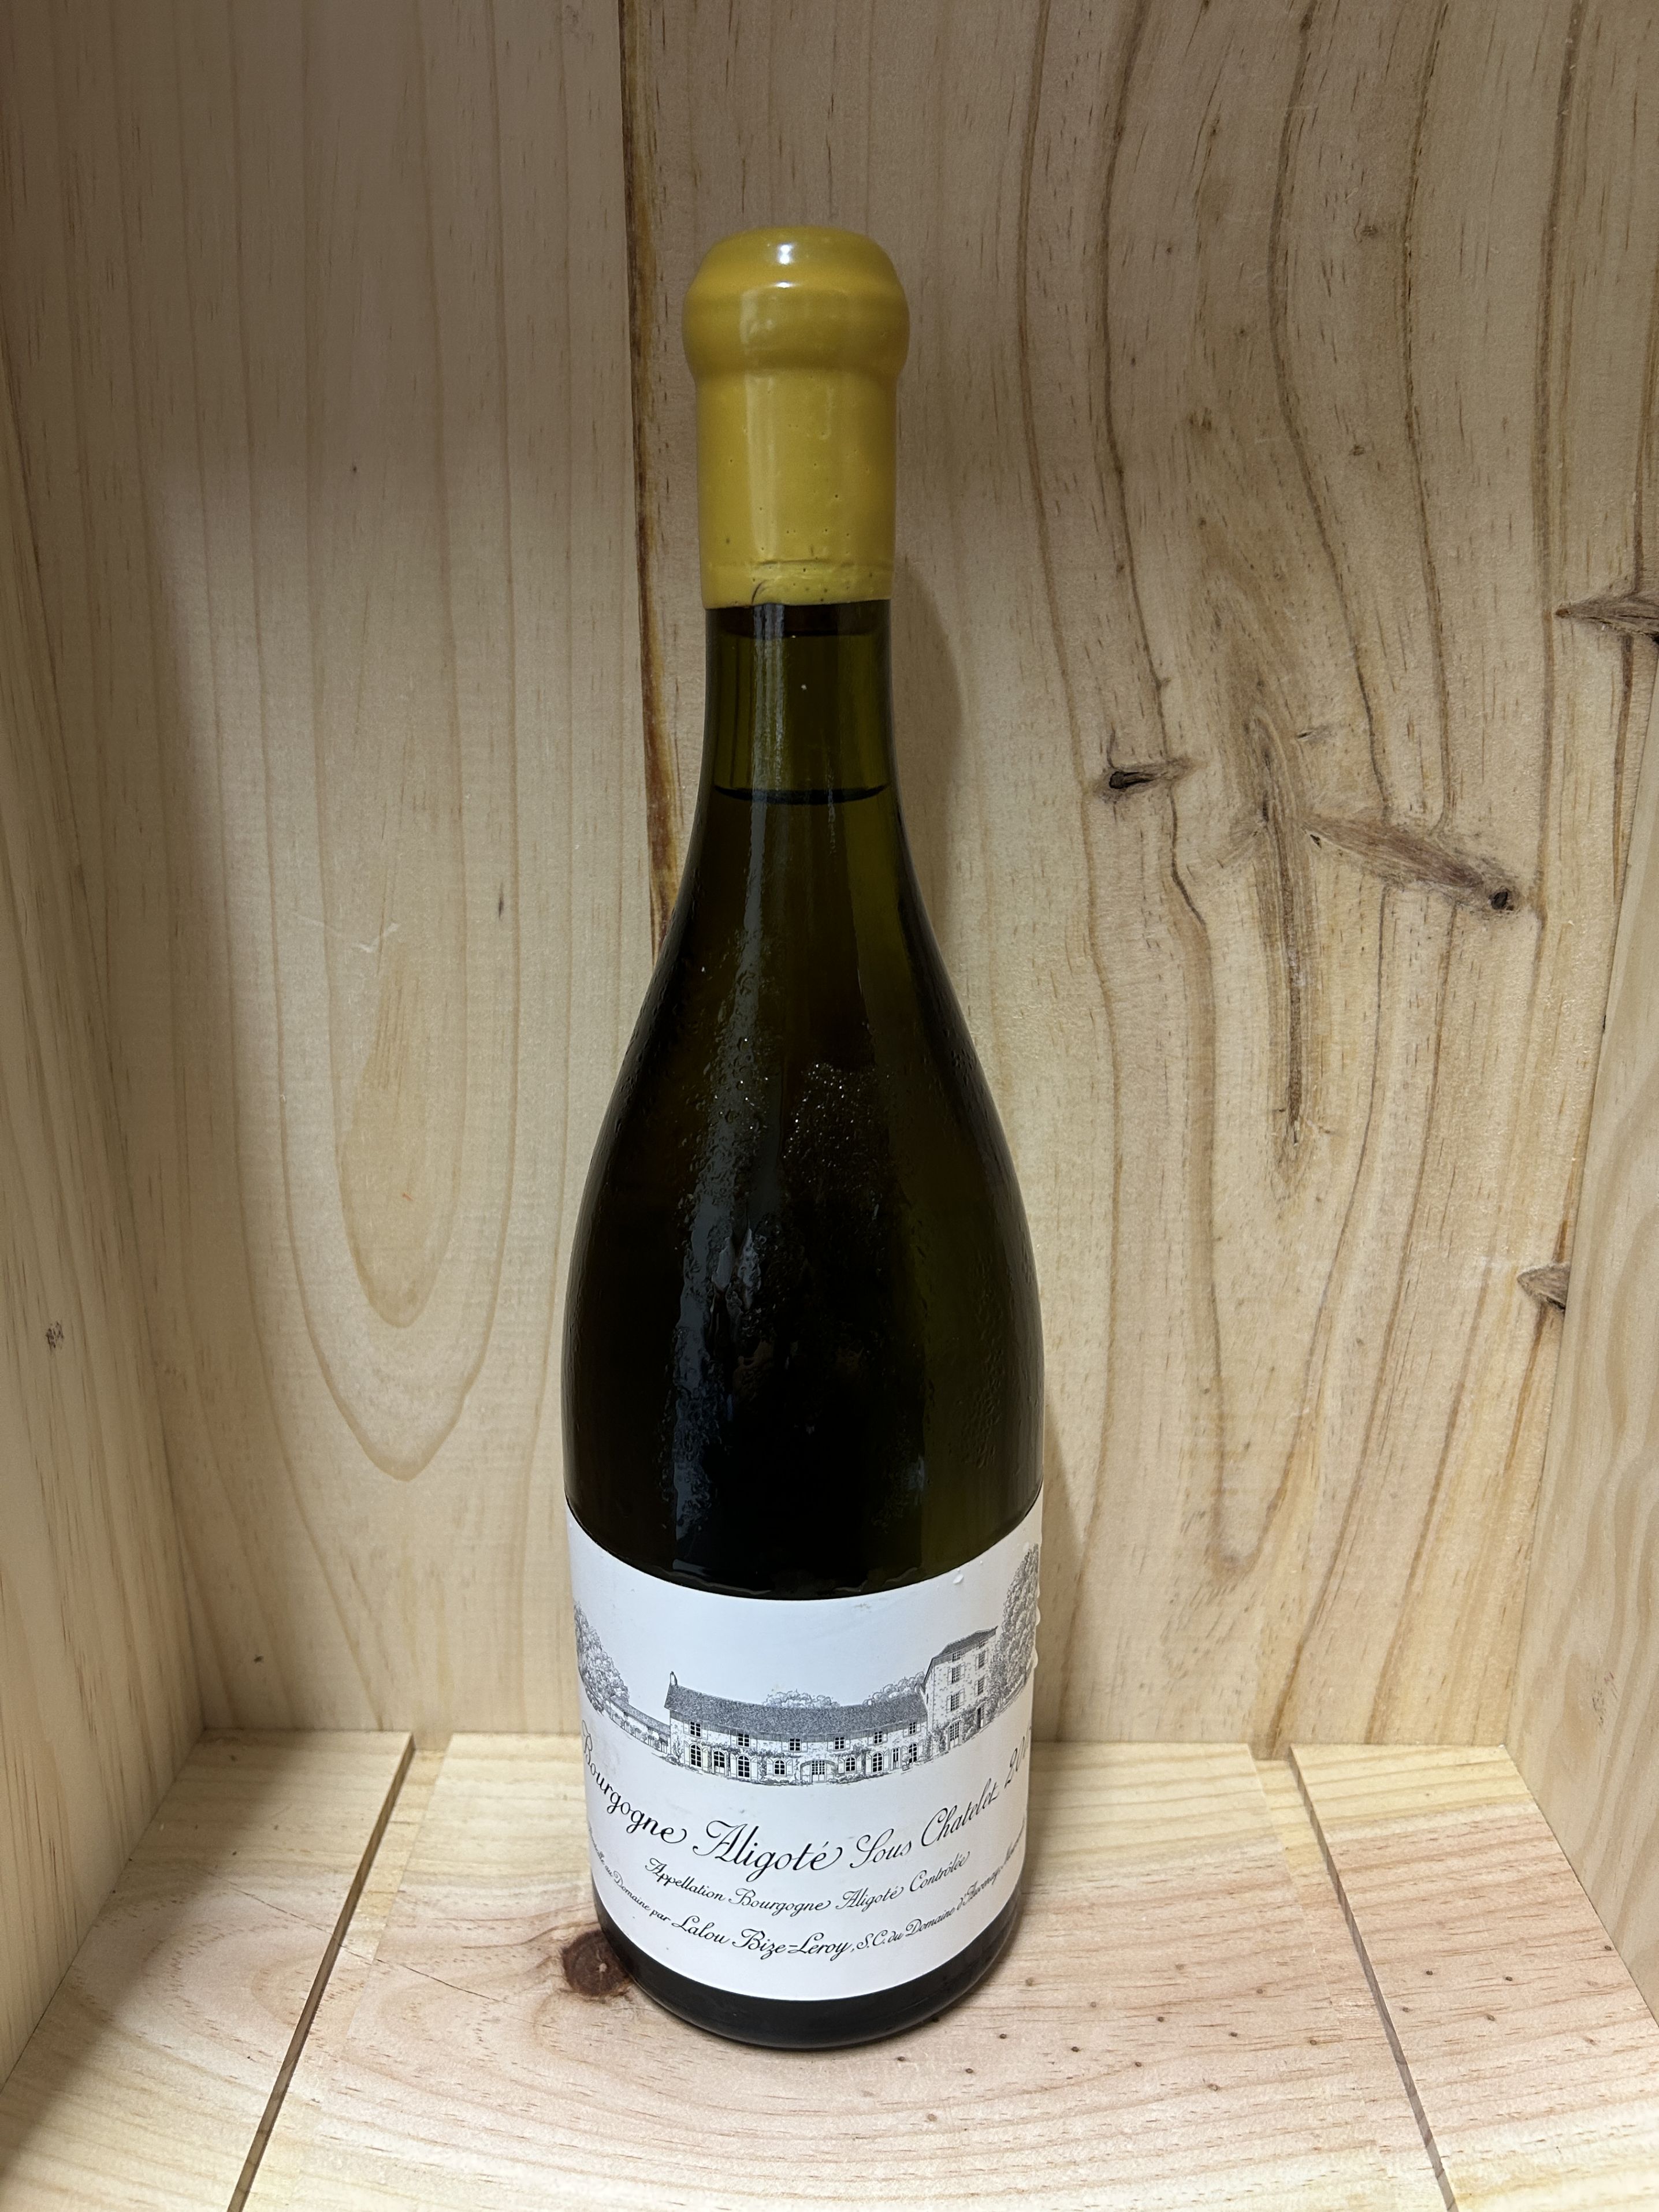 2011 ブルゴーニュ アリゴテ スー シャトレ ドメーヌ ドーヴネ 白ワイン 750ml Domaine d'Auvenay Bourgogne Aligote Sous Chatelet フランス ブルゴーニュ